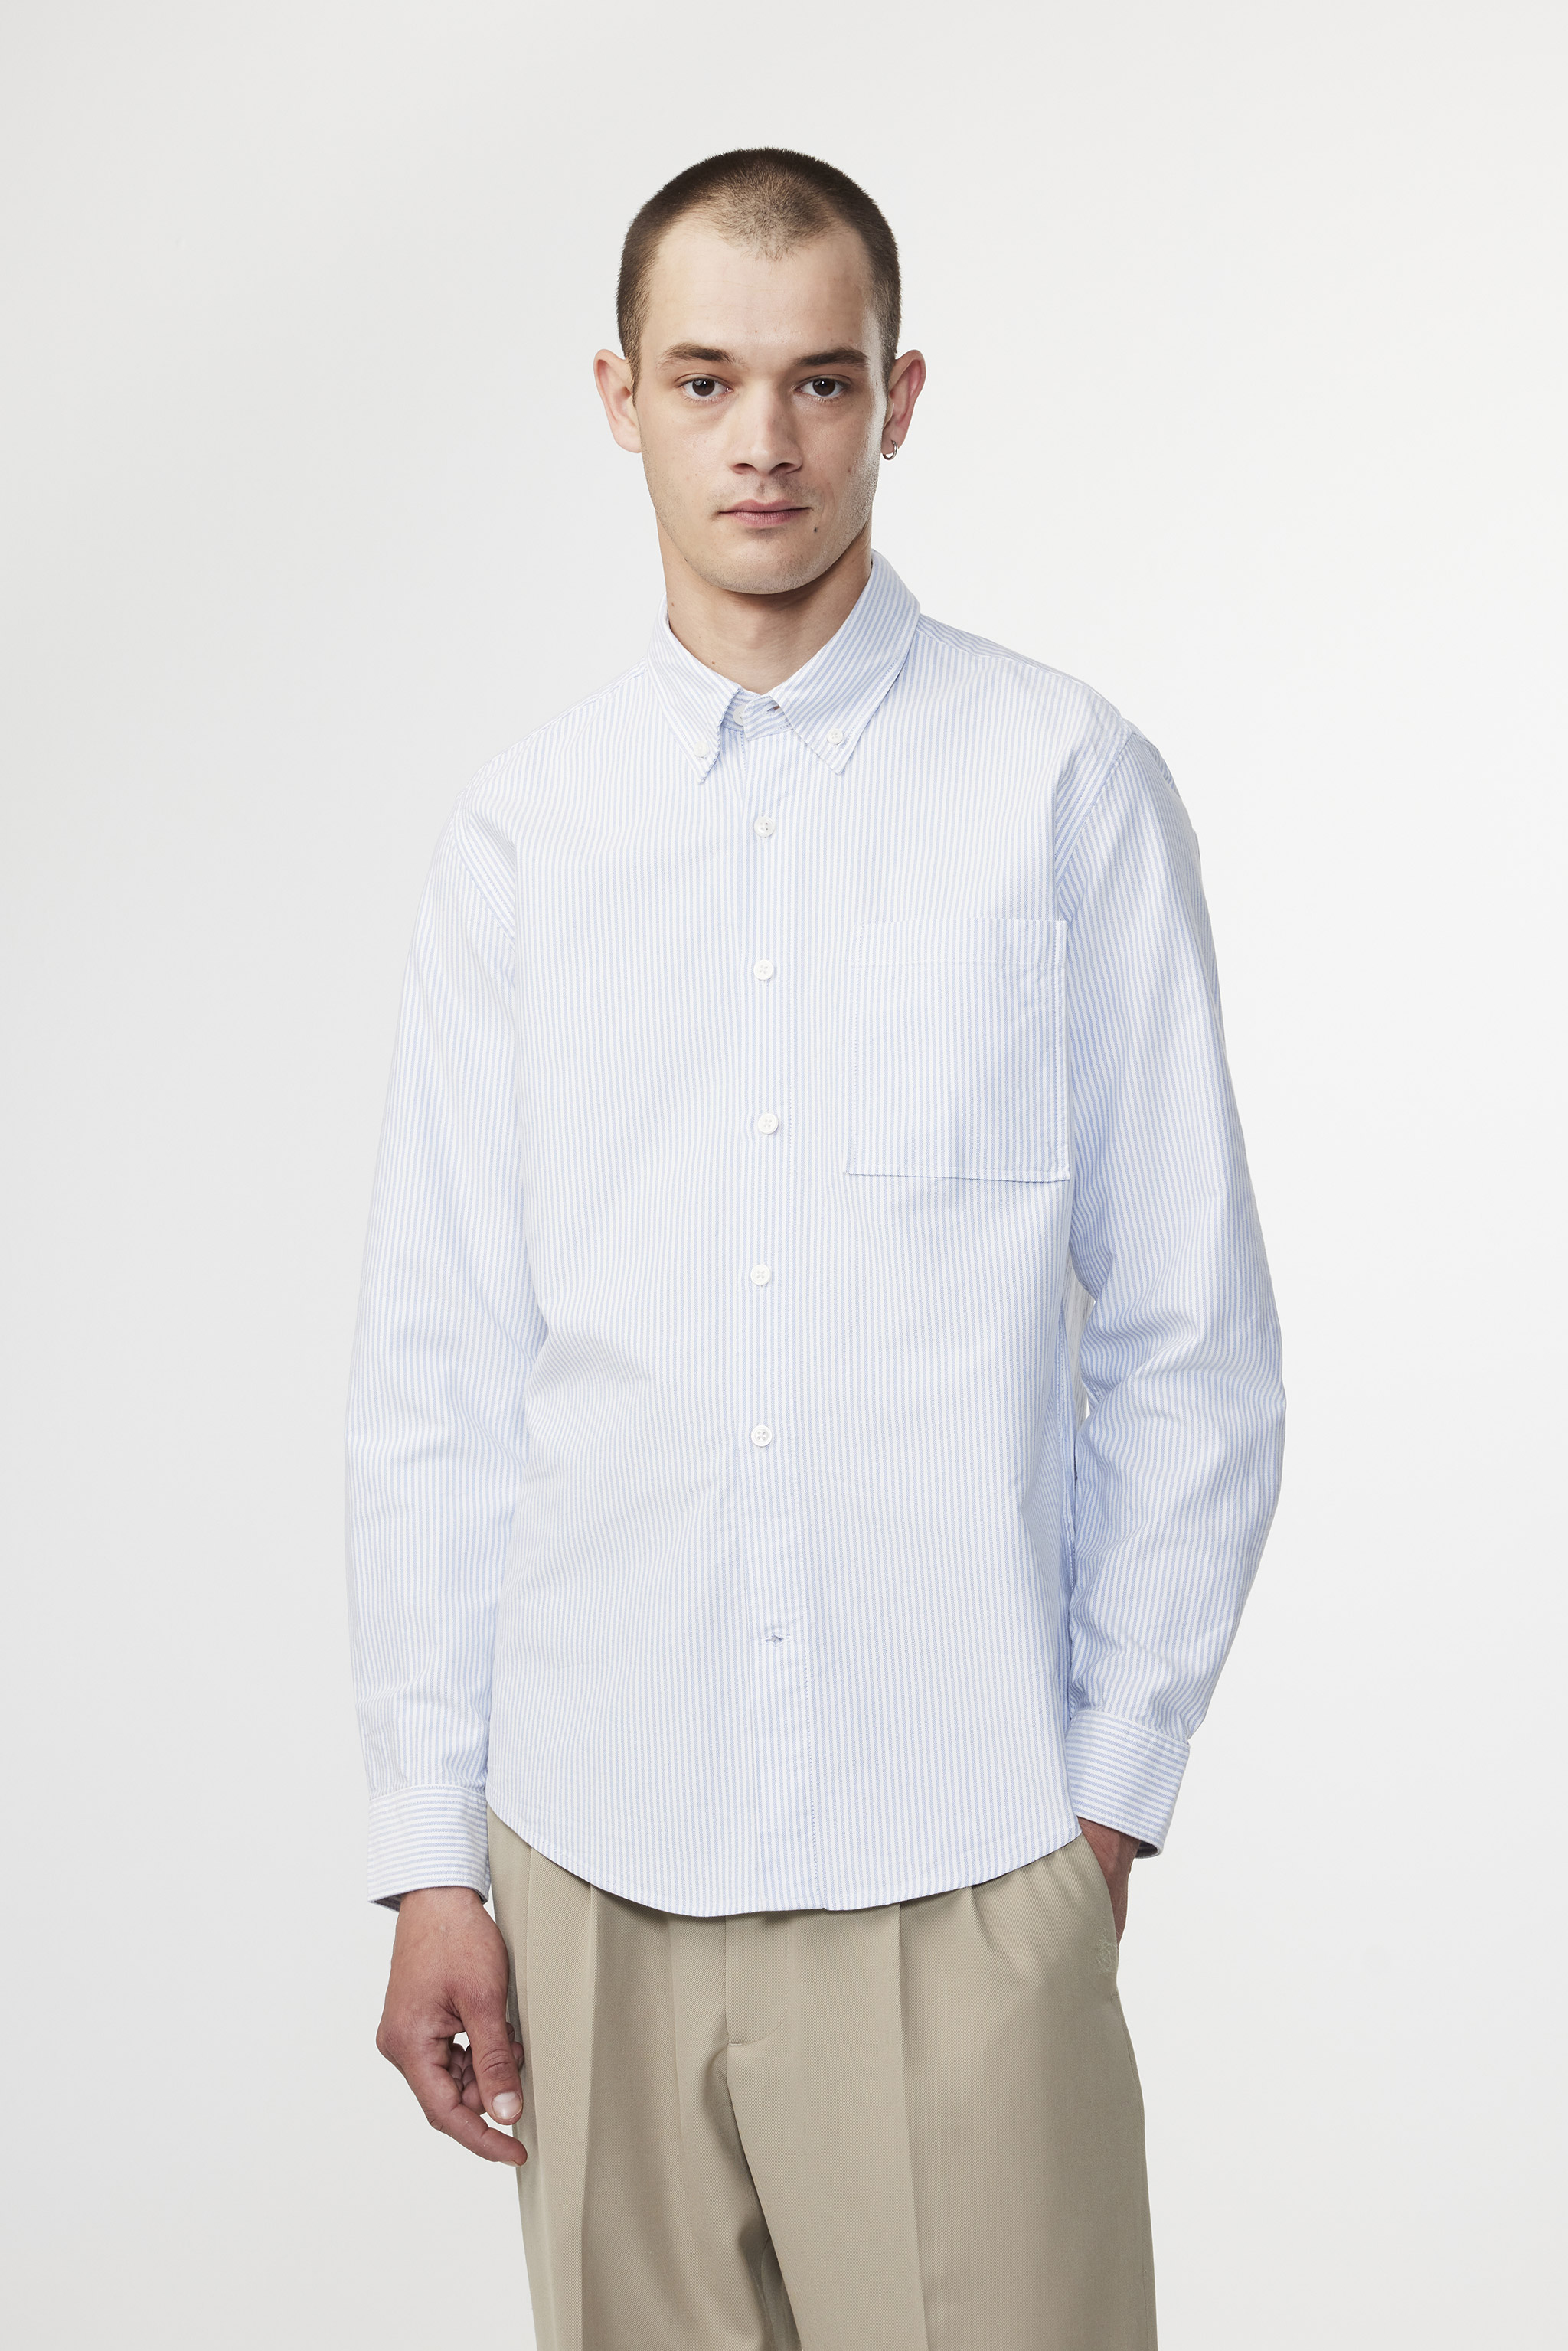 Arne 5031 men's shirt - Blue Stripe - Buy online at NN.07®